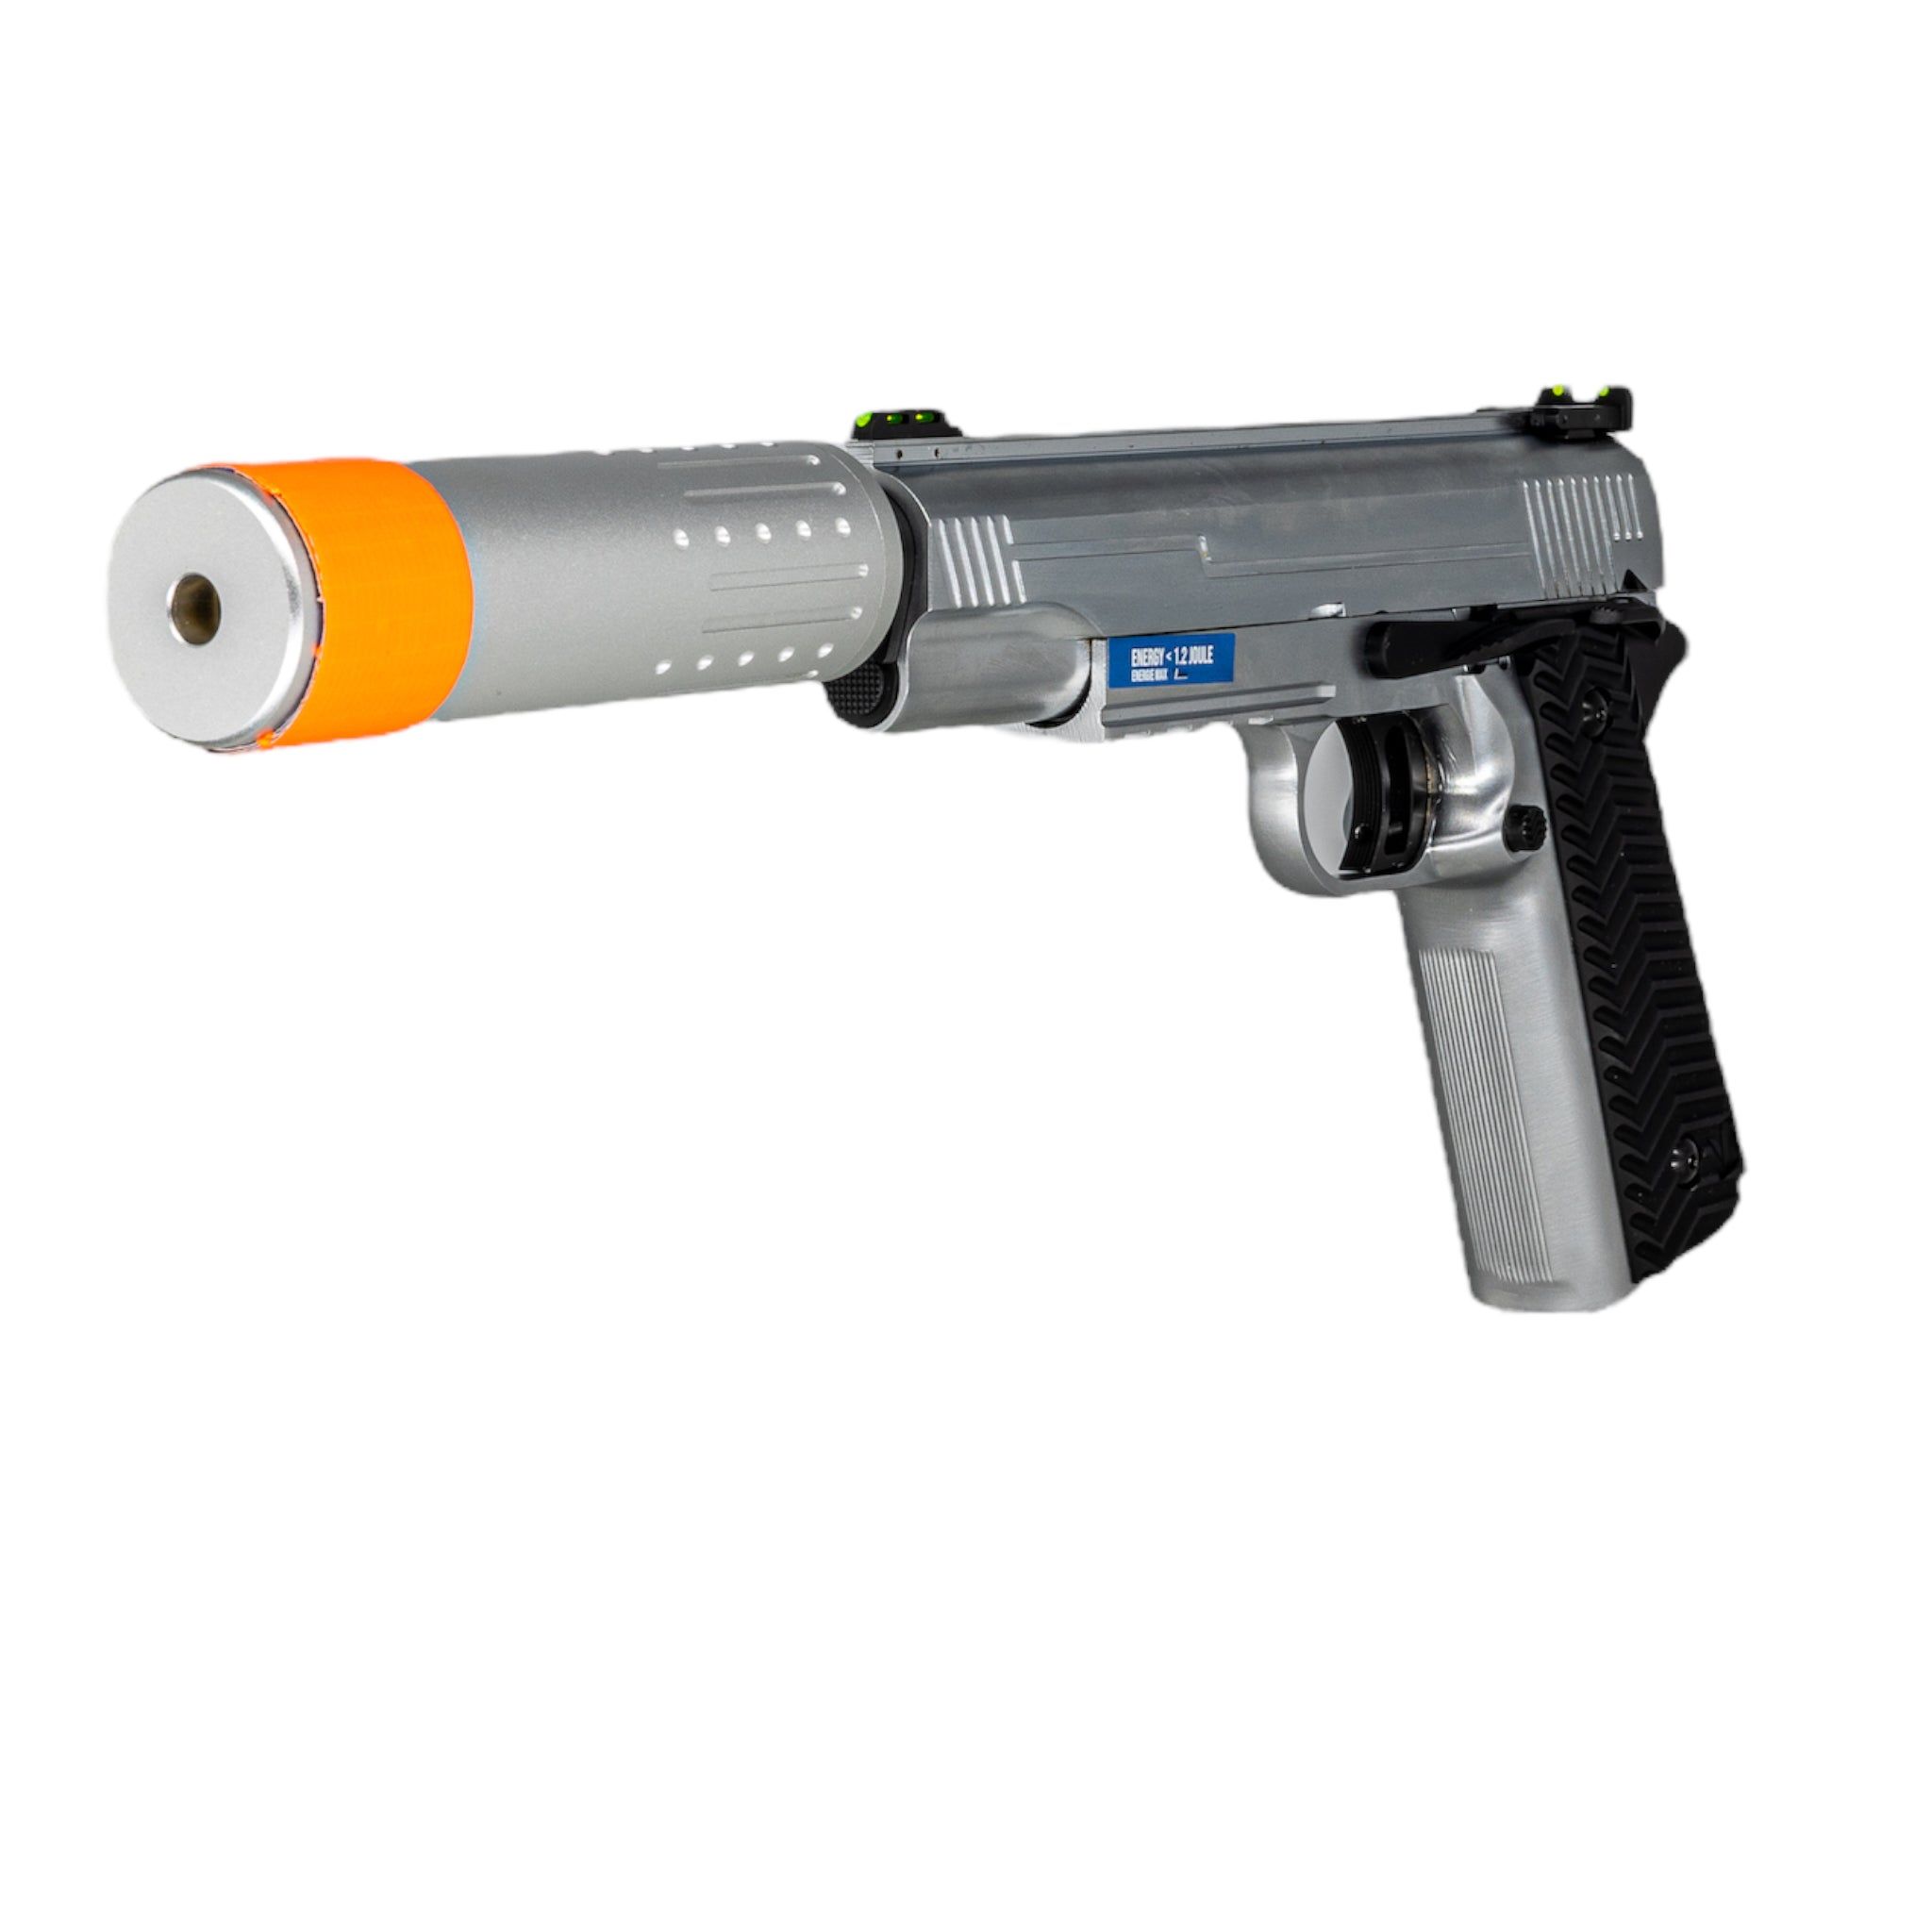 Vorsk VX-14 Gas Blowback Pistol w/ Suppressor Kit (Silver) - ssairsoft.com